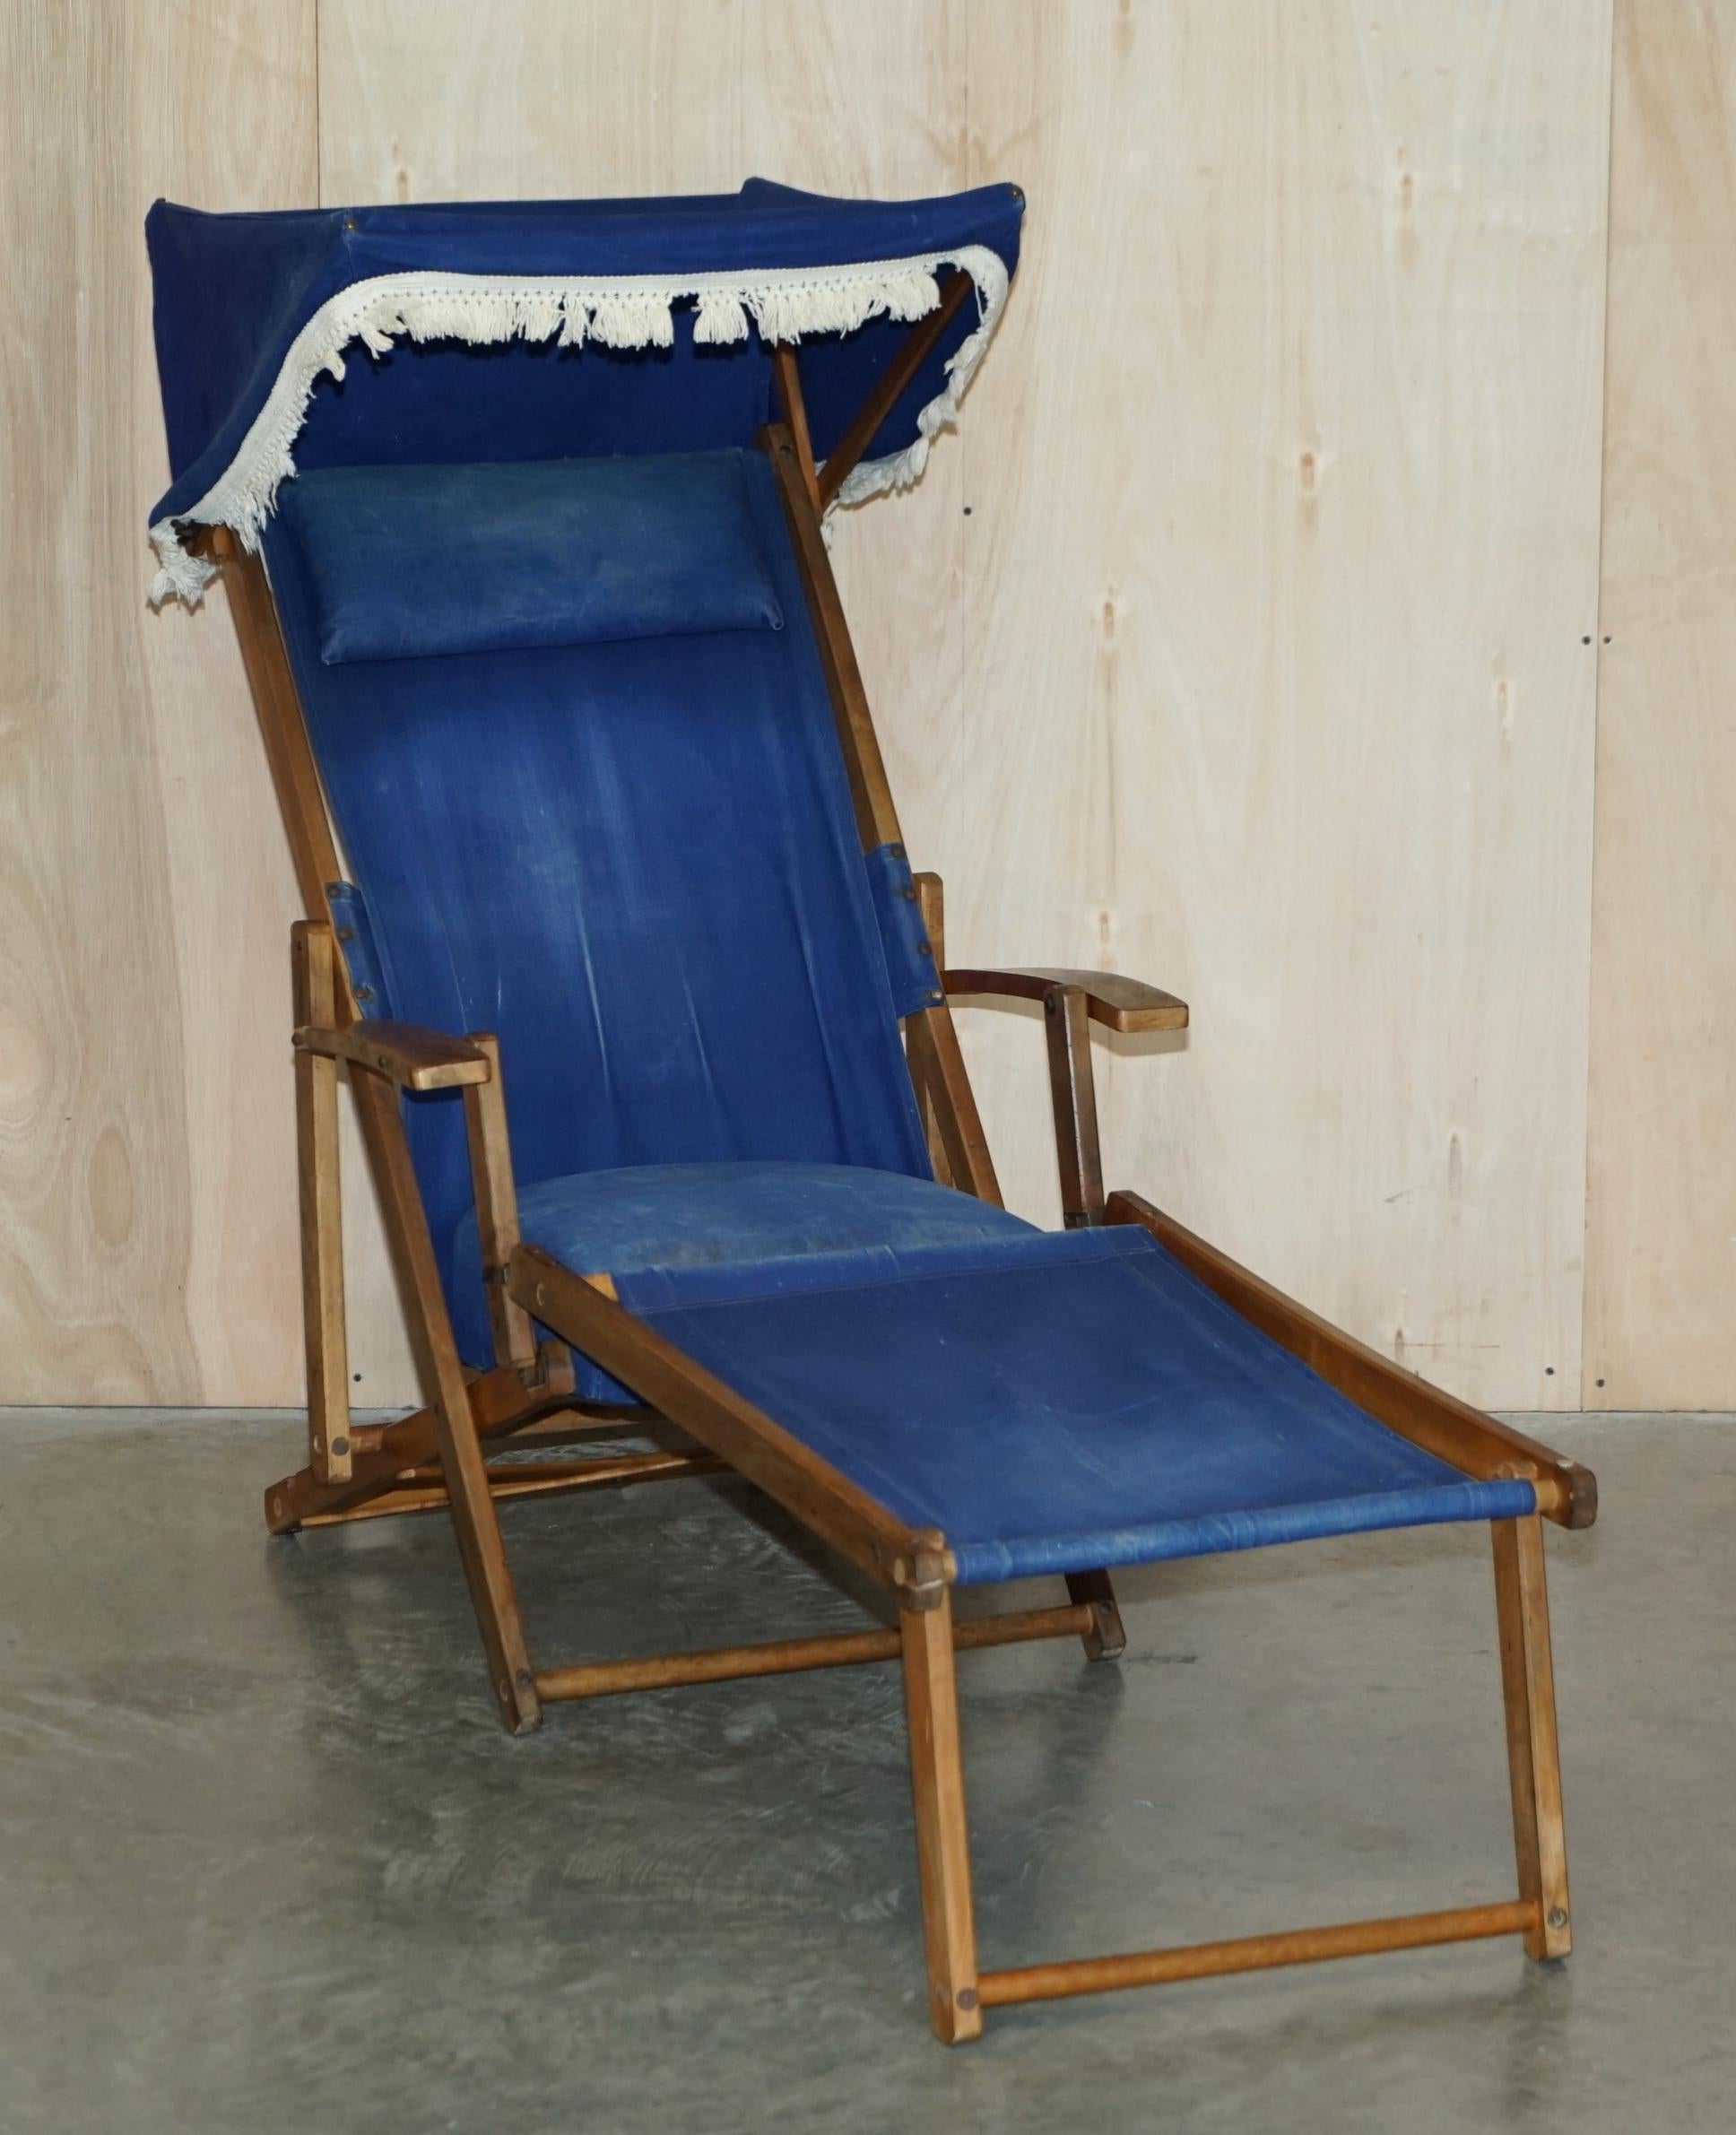 Nous sommes ravis de proposer à la vente cette paire de chaises longues à vapeur Haxyes, datant des années 1900-1920, avec auvent et repose-pieds rétractables

Une paire de fauteuils victoriens anglais originaux vraiment étonnants. Elles datent de